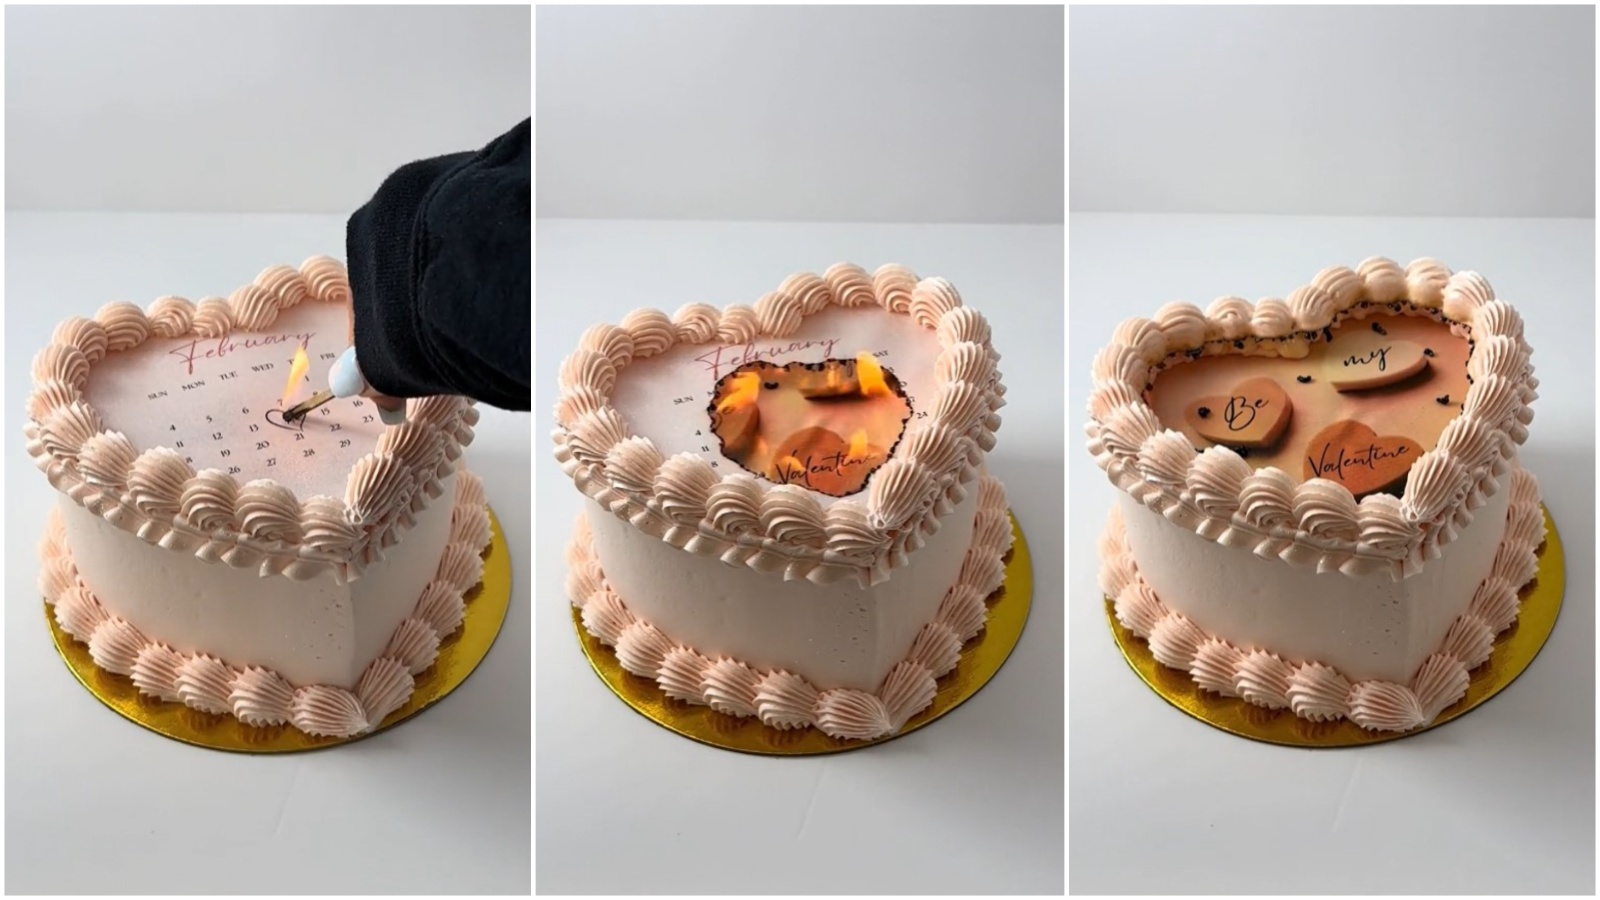 Bolj izvirne sladice že dolgo nismo videli: Goreče torte, ki so zažgale splet